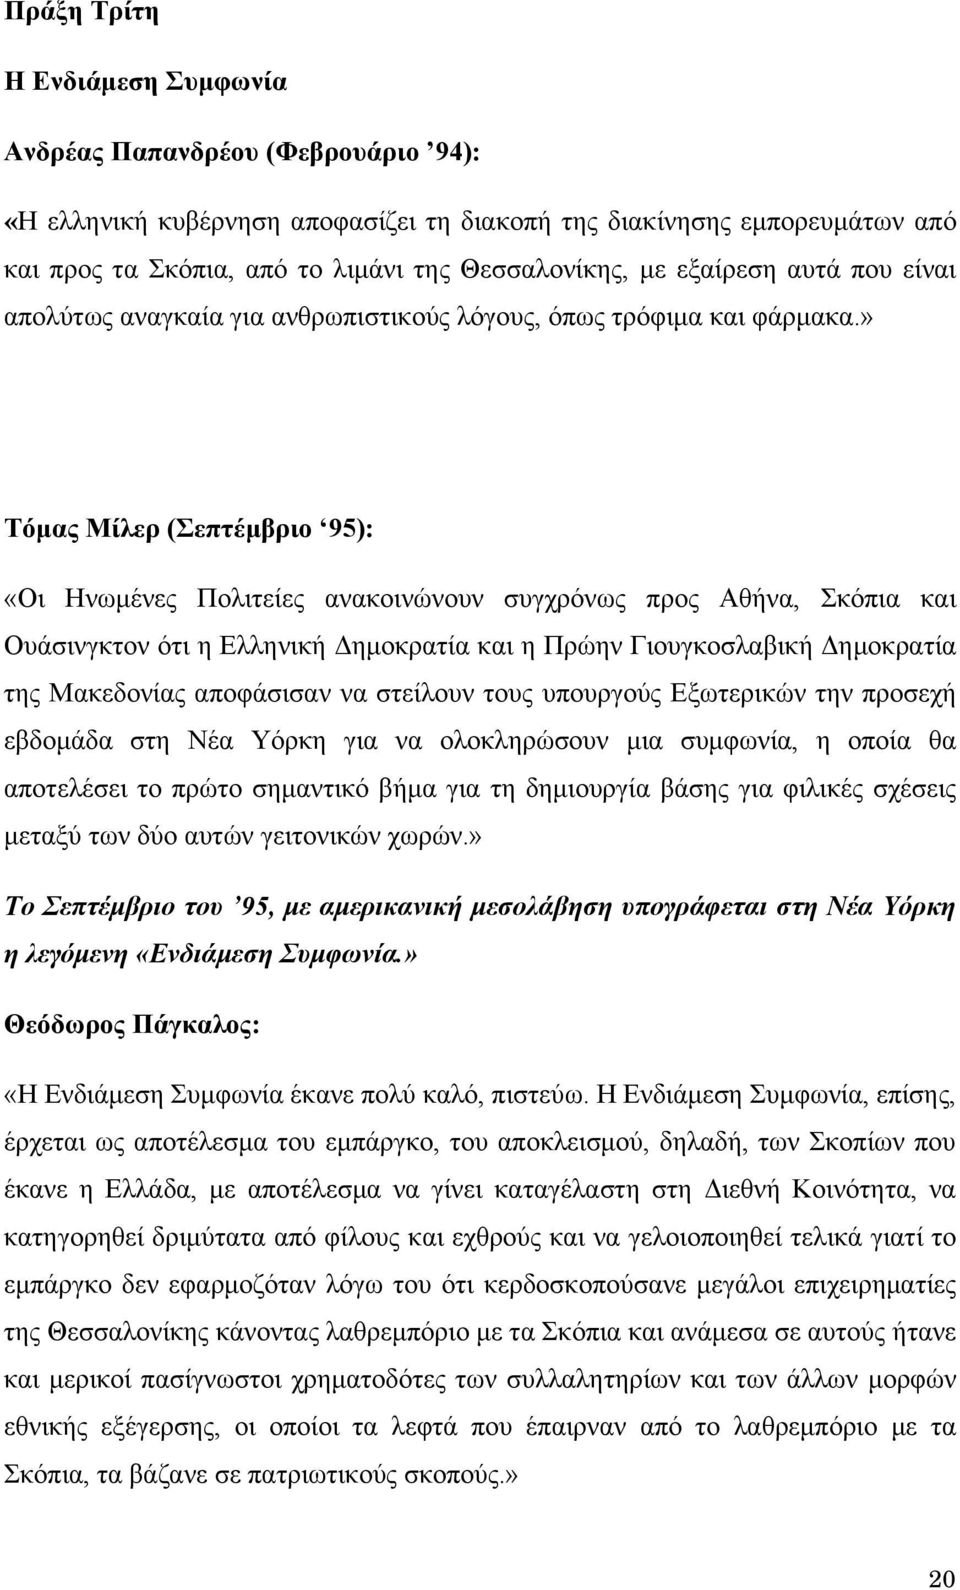 » Τόμας Μίλερ (Σεπτέμβριο 95): «Οι Ηνωμένες Πολιτείες ανακοινώνουν συγχρόνως προς Αθήνα, Σκόπια και Ουάσινγκτον ότι η Ελληνική Δημοκρατία και η Πρώην Γιουγκοσλαβική Δημοκρατία της Μακεδονίας